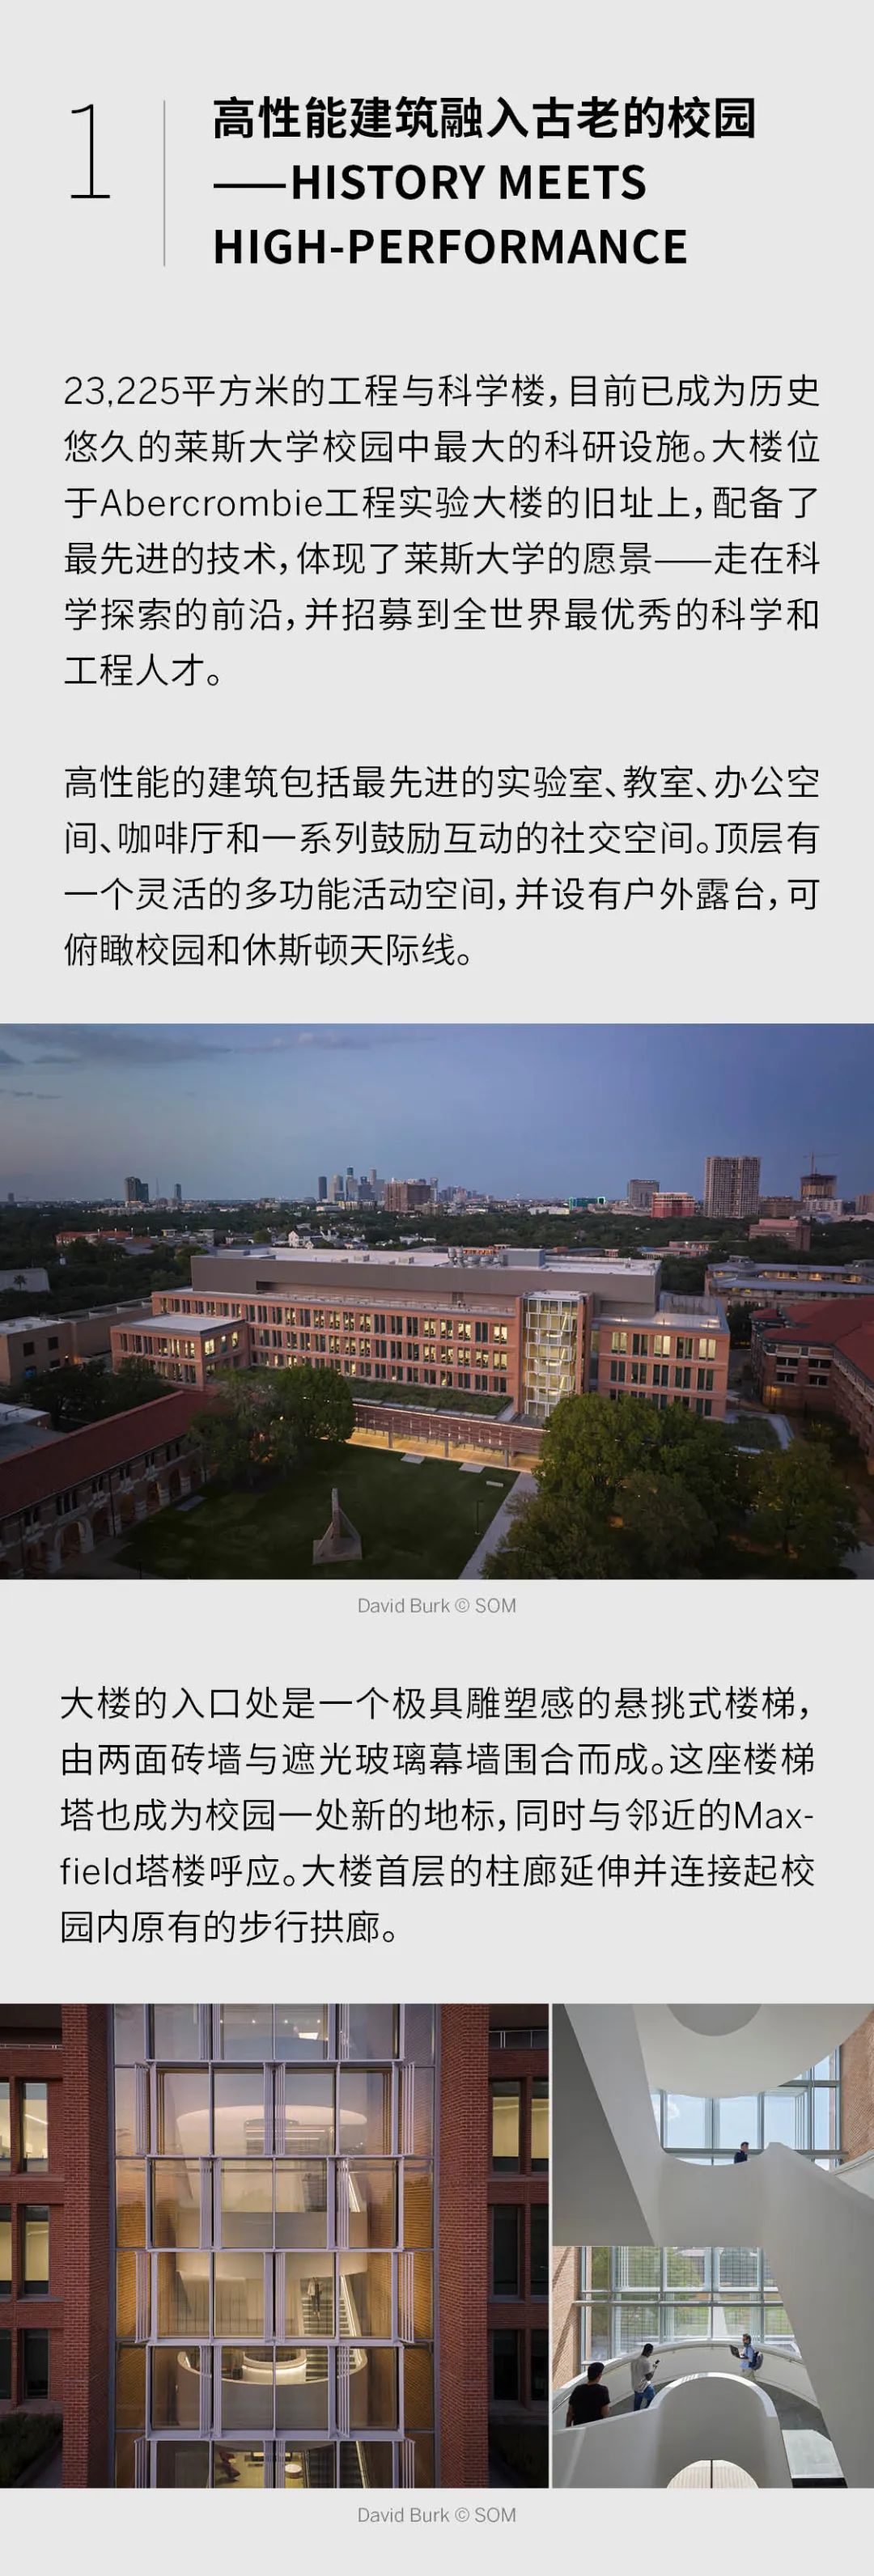 SOM教育项目新作 | 美国莱斯大学(Rice University)新工程与科学楼